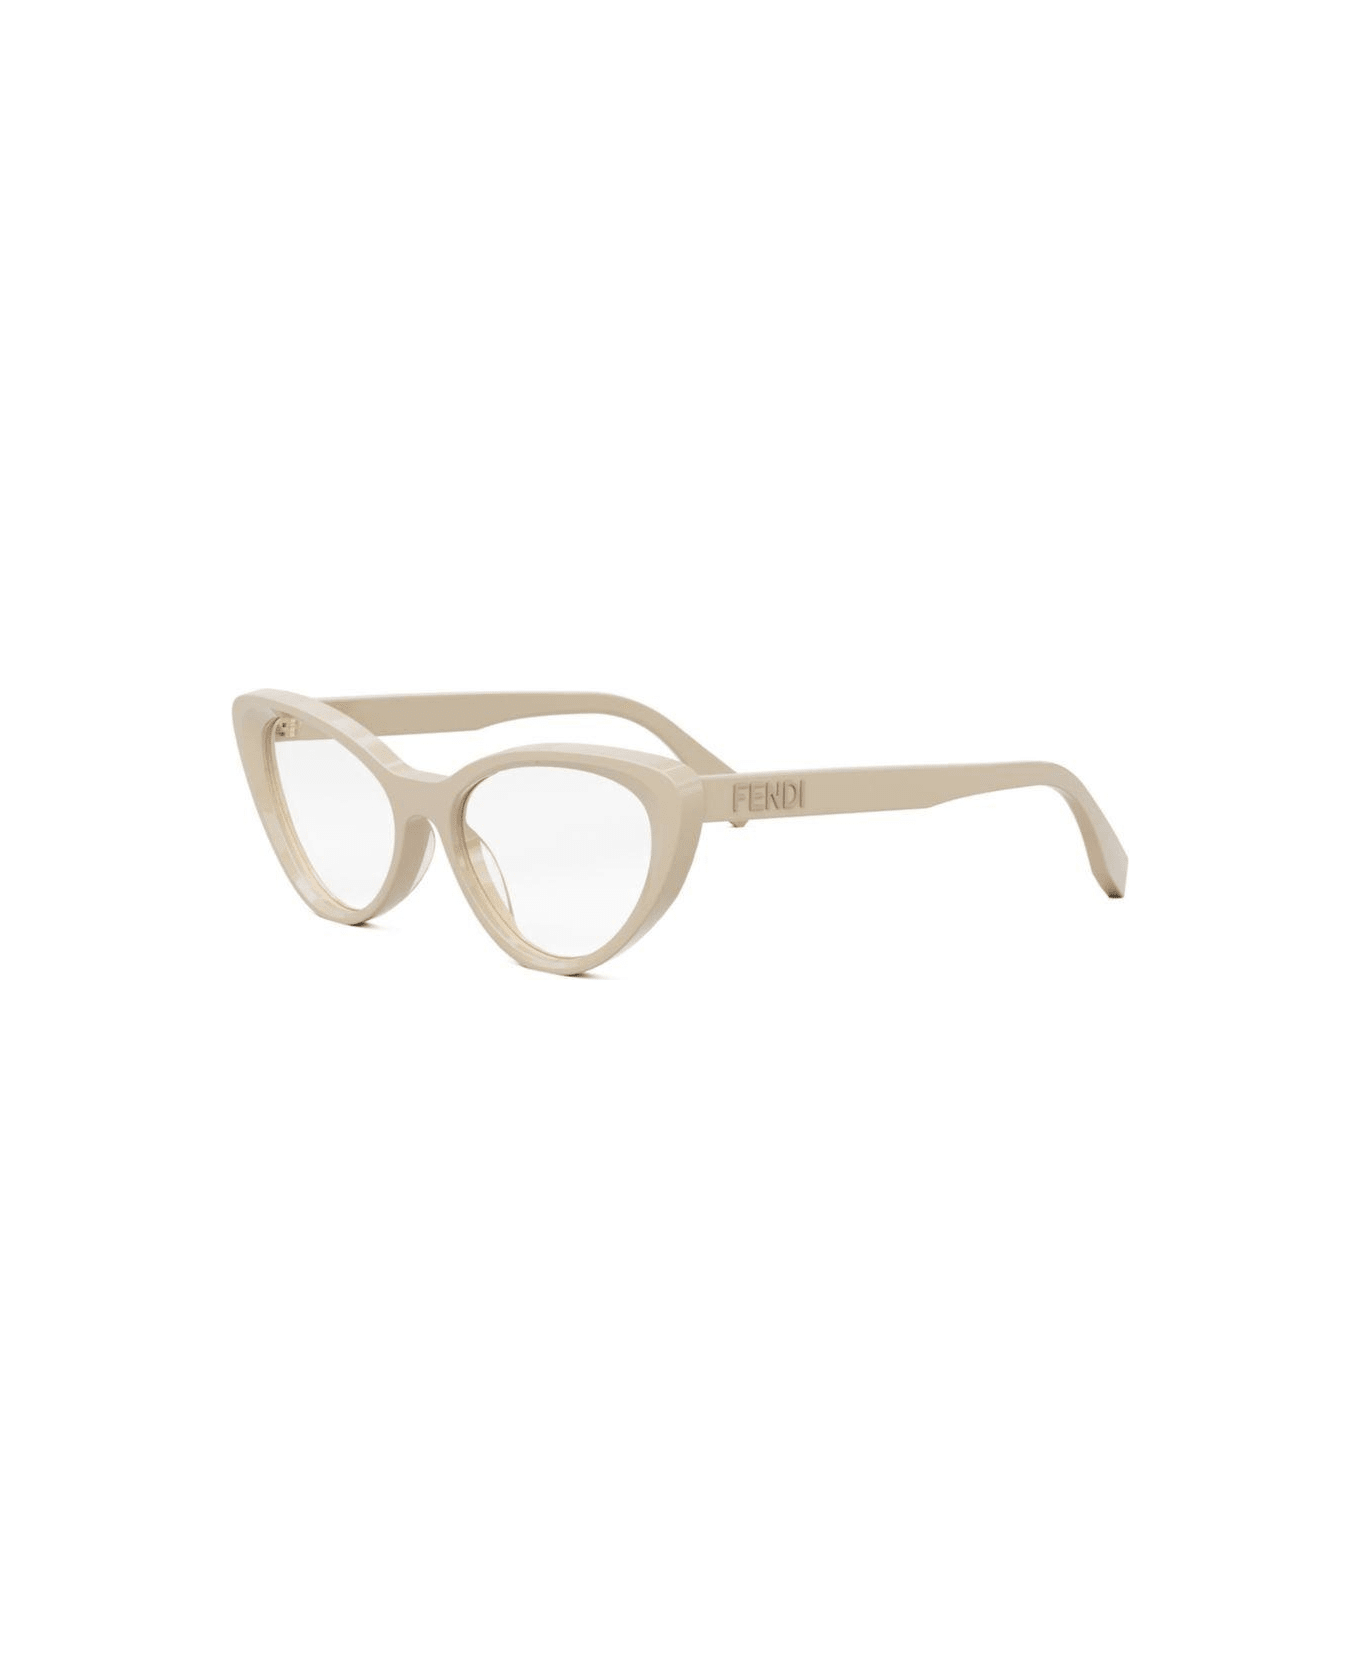 Fendi Eyewear Butterfly Frame Glasses - 057